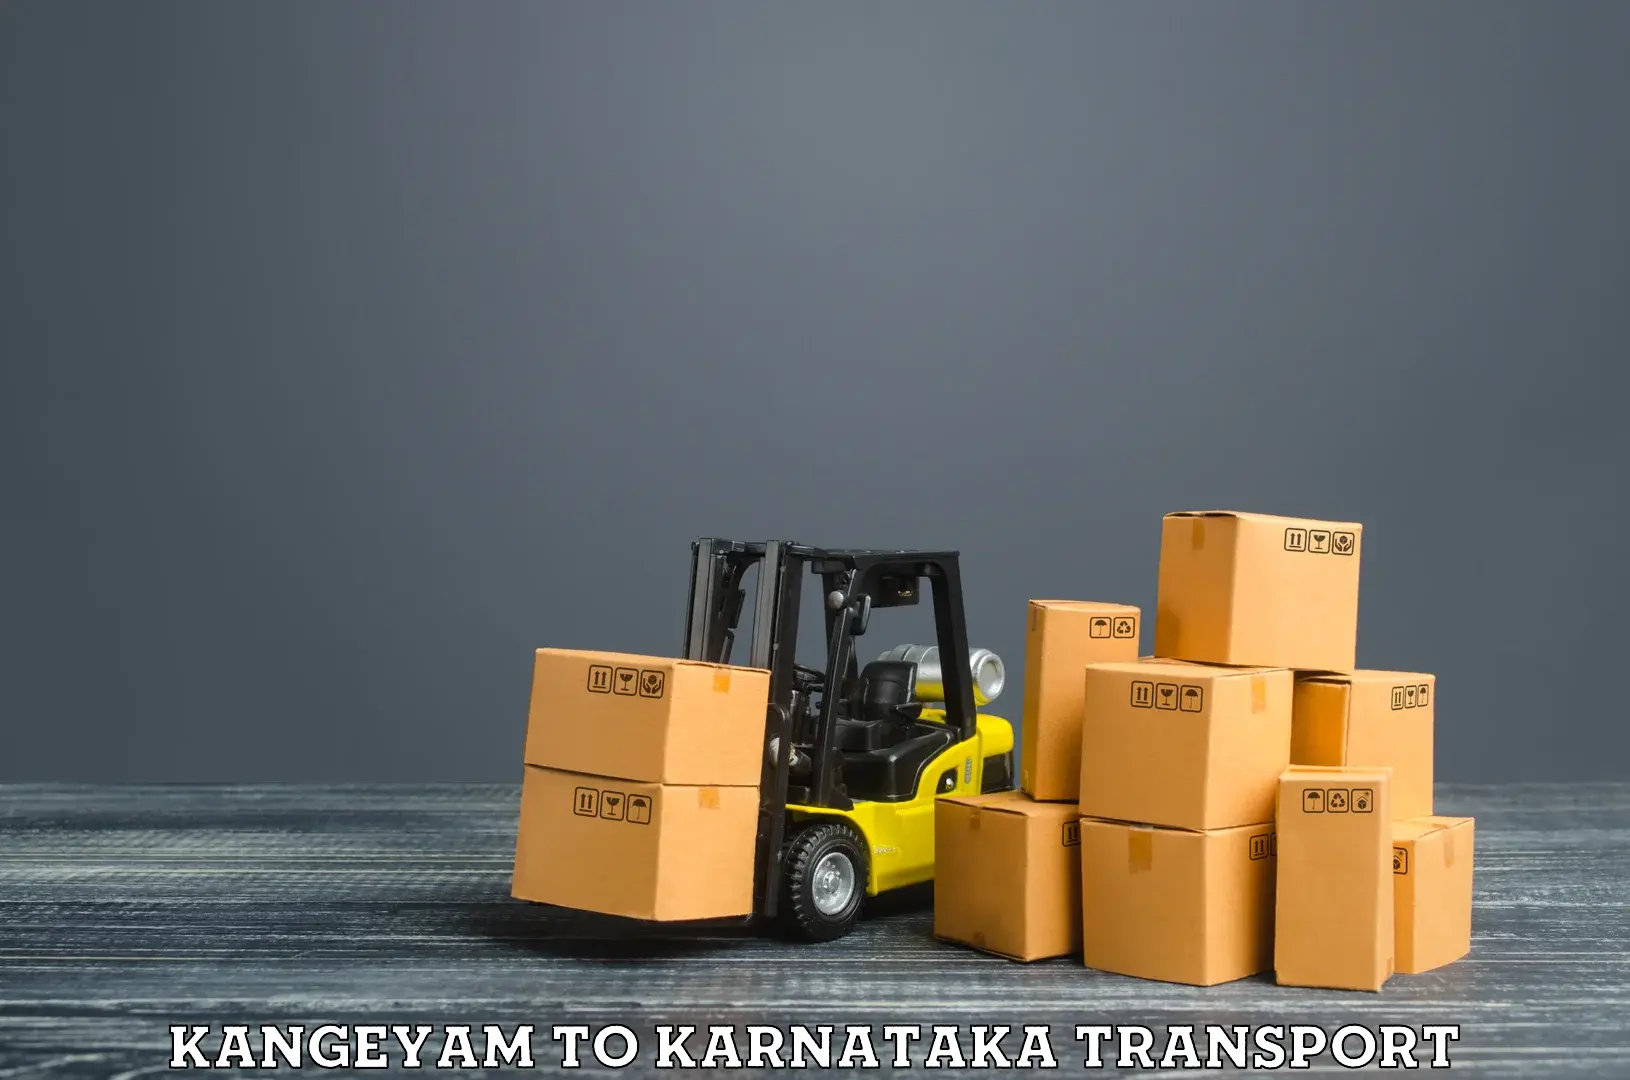 Cargo train transport services Kangeyam to Kanjarakatte